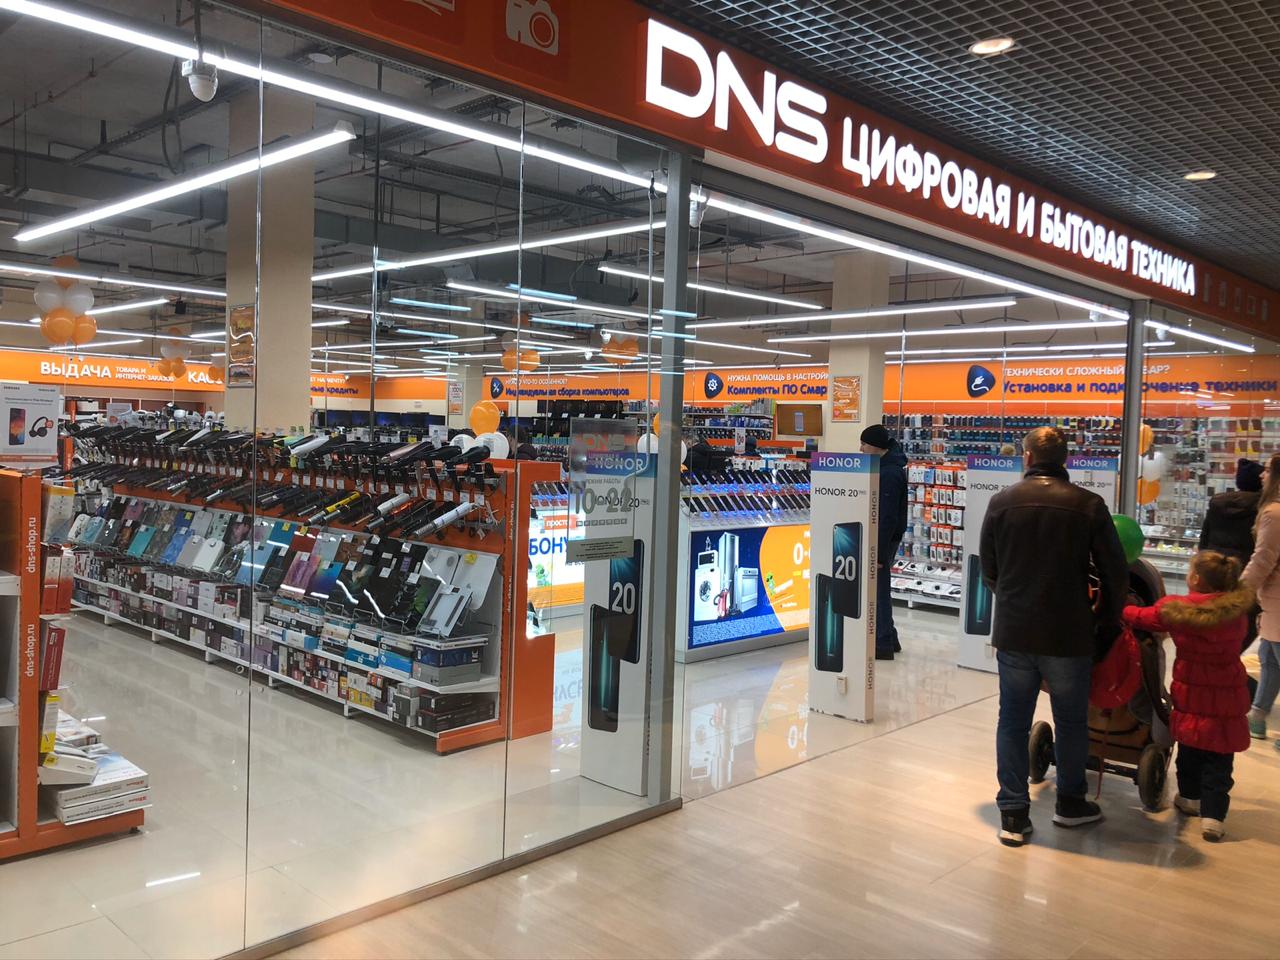 Сайт днс пермь. ДНС. DNS магазин. DNS Казахстан. DNS shop Тюмень.